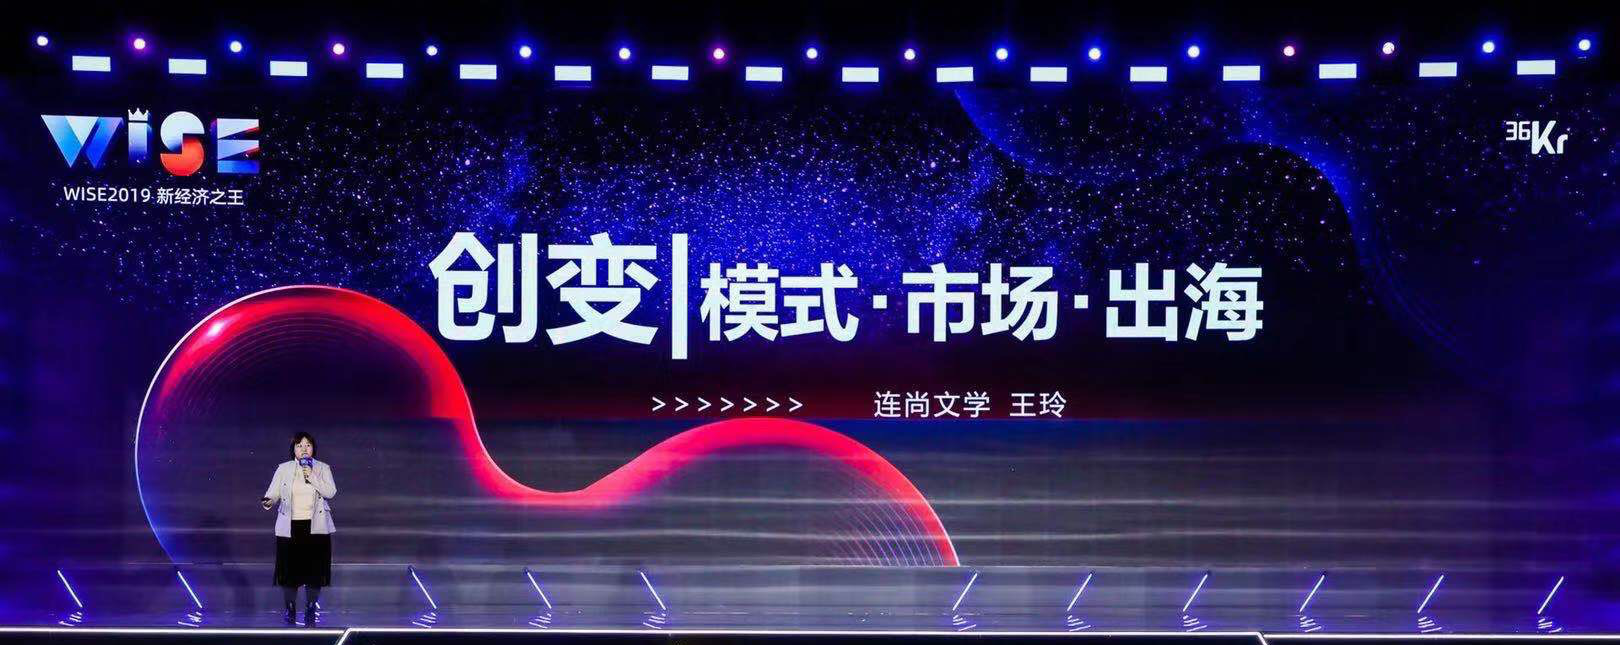 南京独角兽企业「连尚文学」登榜“2019 新经济之王”